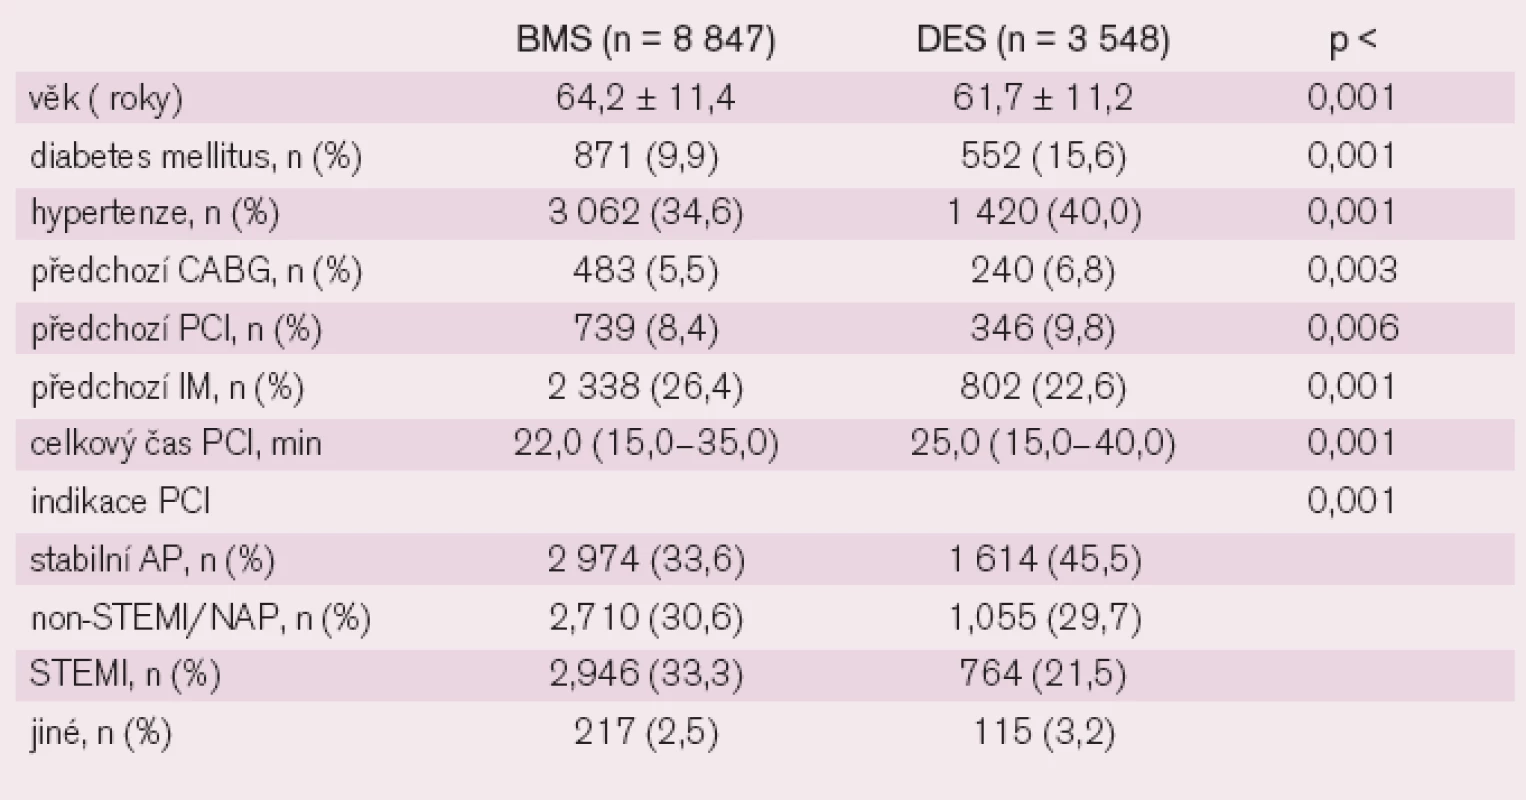 Charakteristika nemocných a postupů při léčbě DES či BMS.